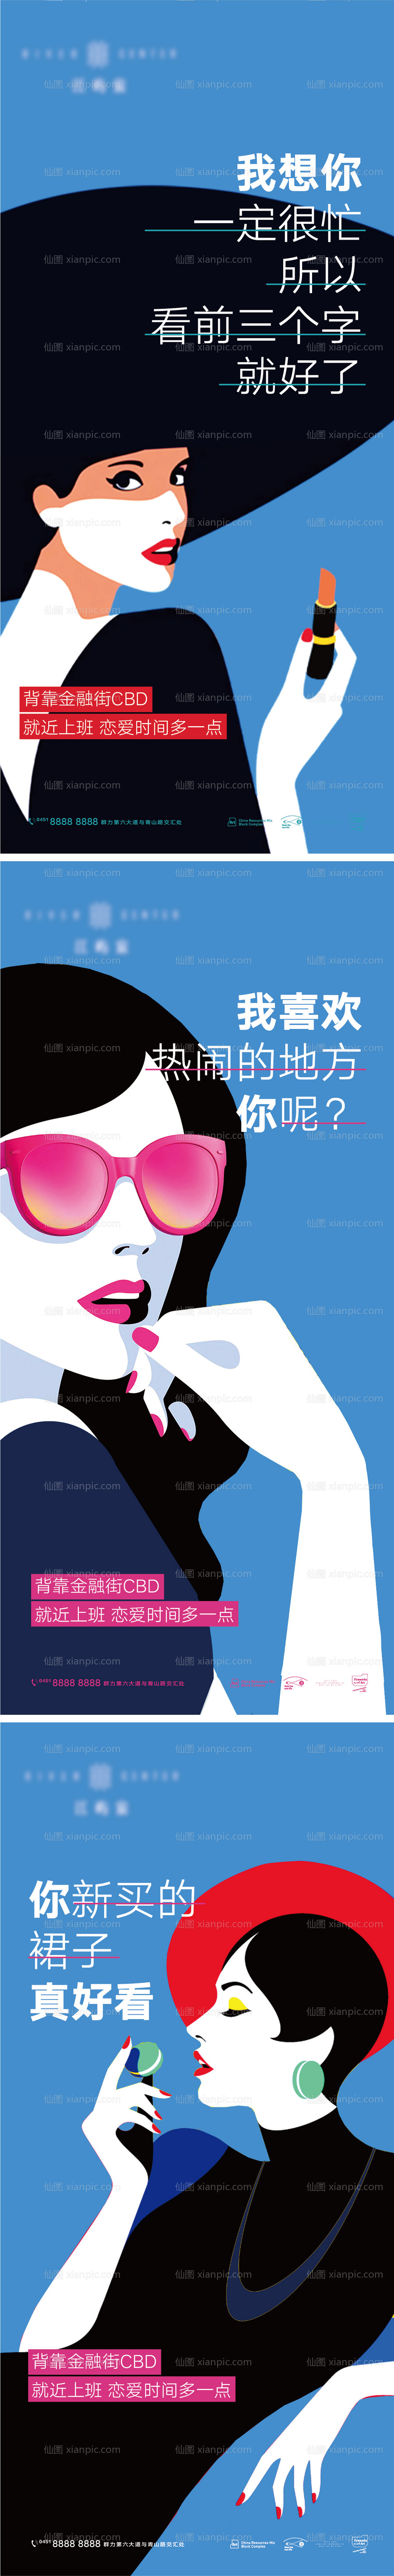 素材乐-38妇女节女神节女人商业购物插画海报